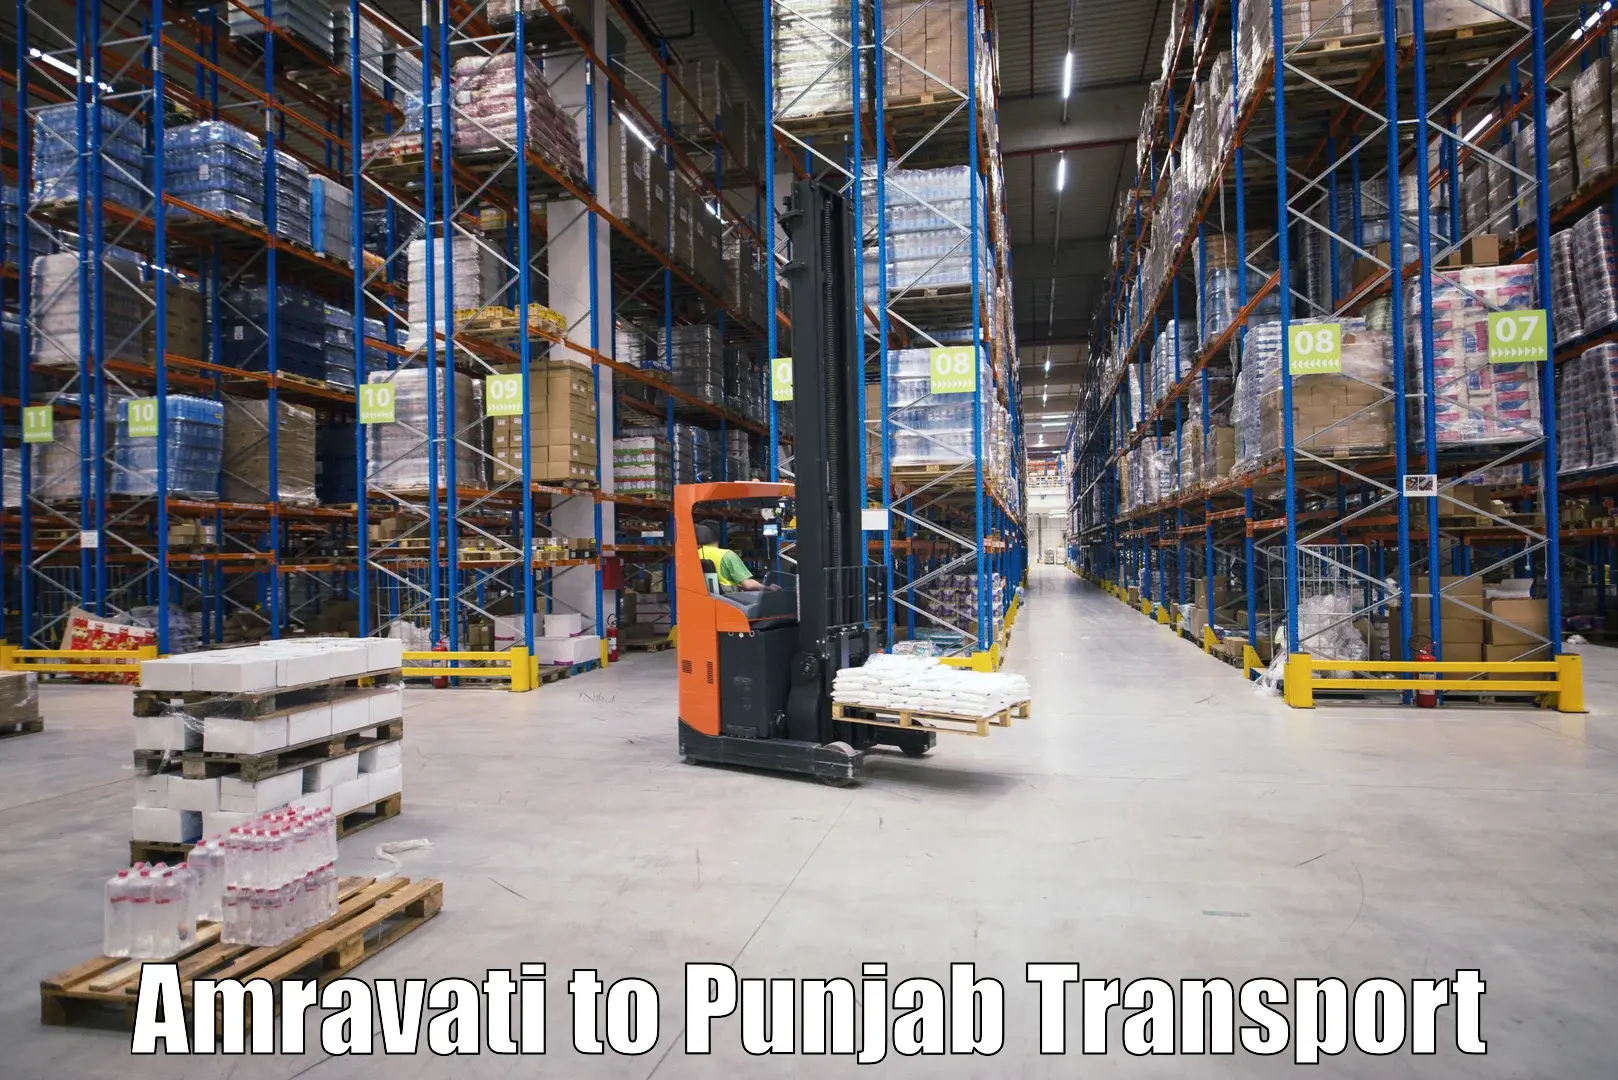 Lorry transport service Amravati to Nangal